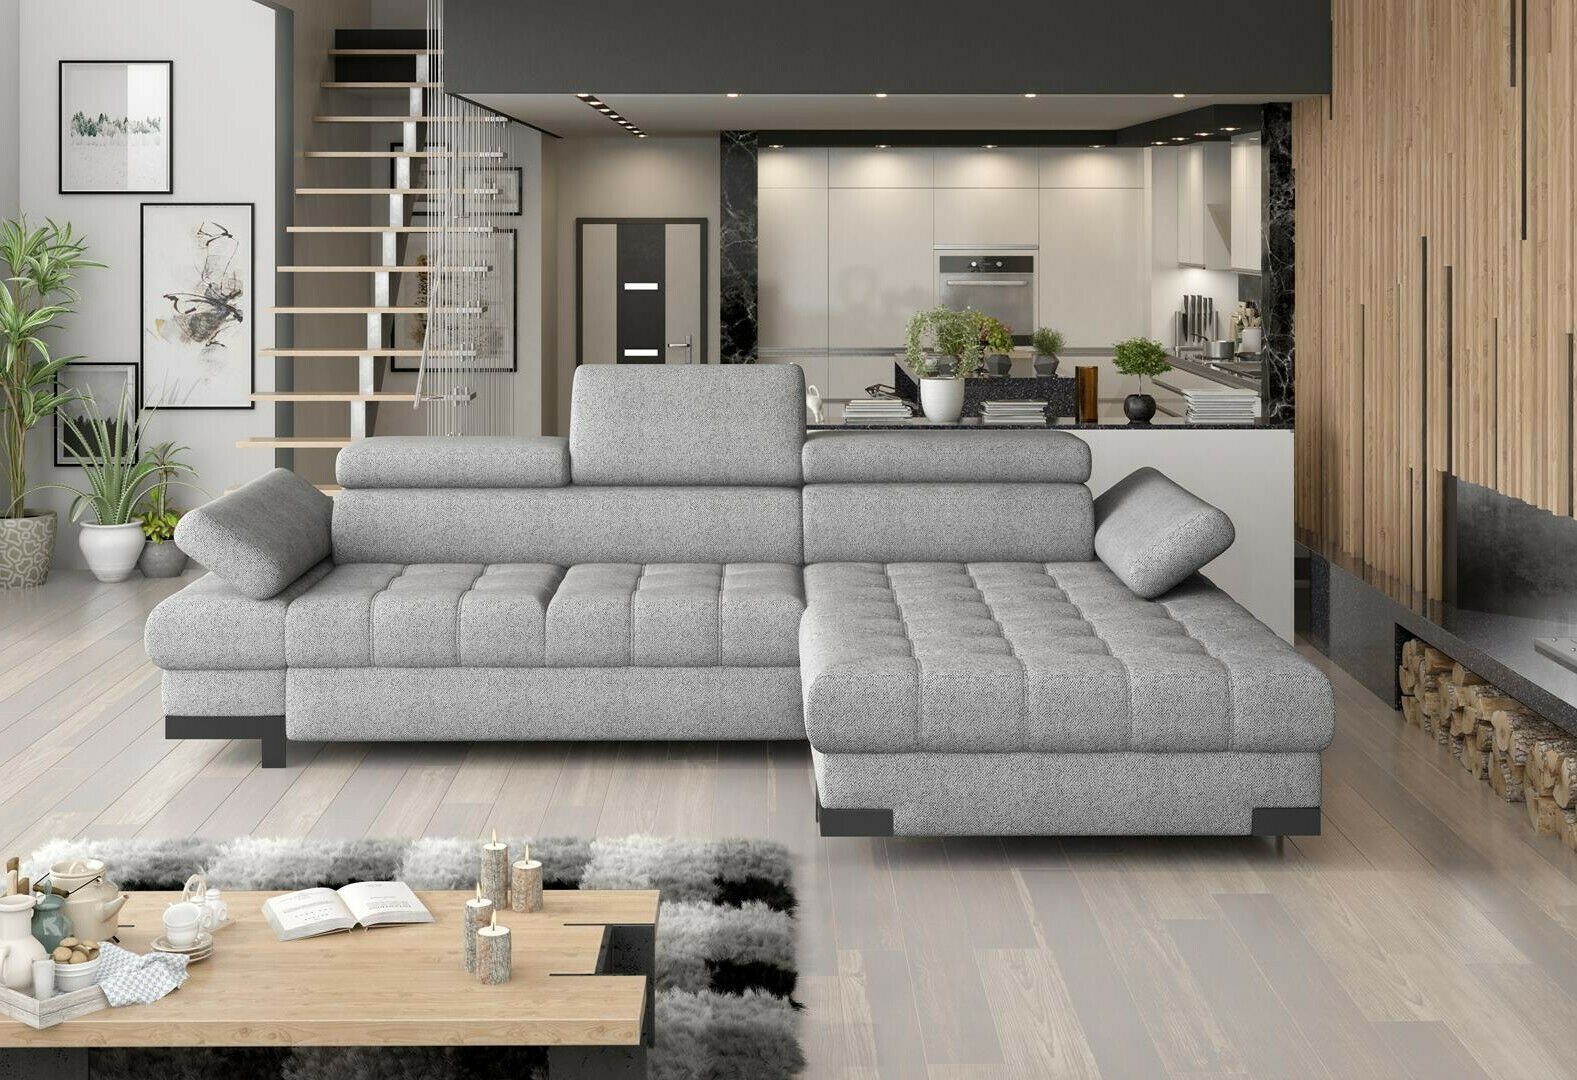 JVmoebel Ecksofa, Design Ecksofa L-form Bettfunktion Couch Leder Textil Sofa